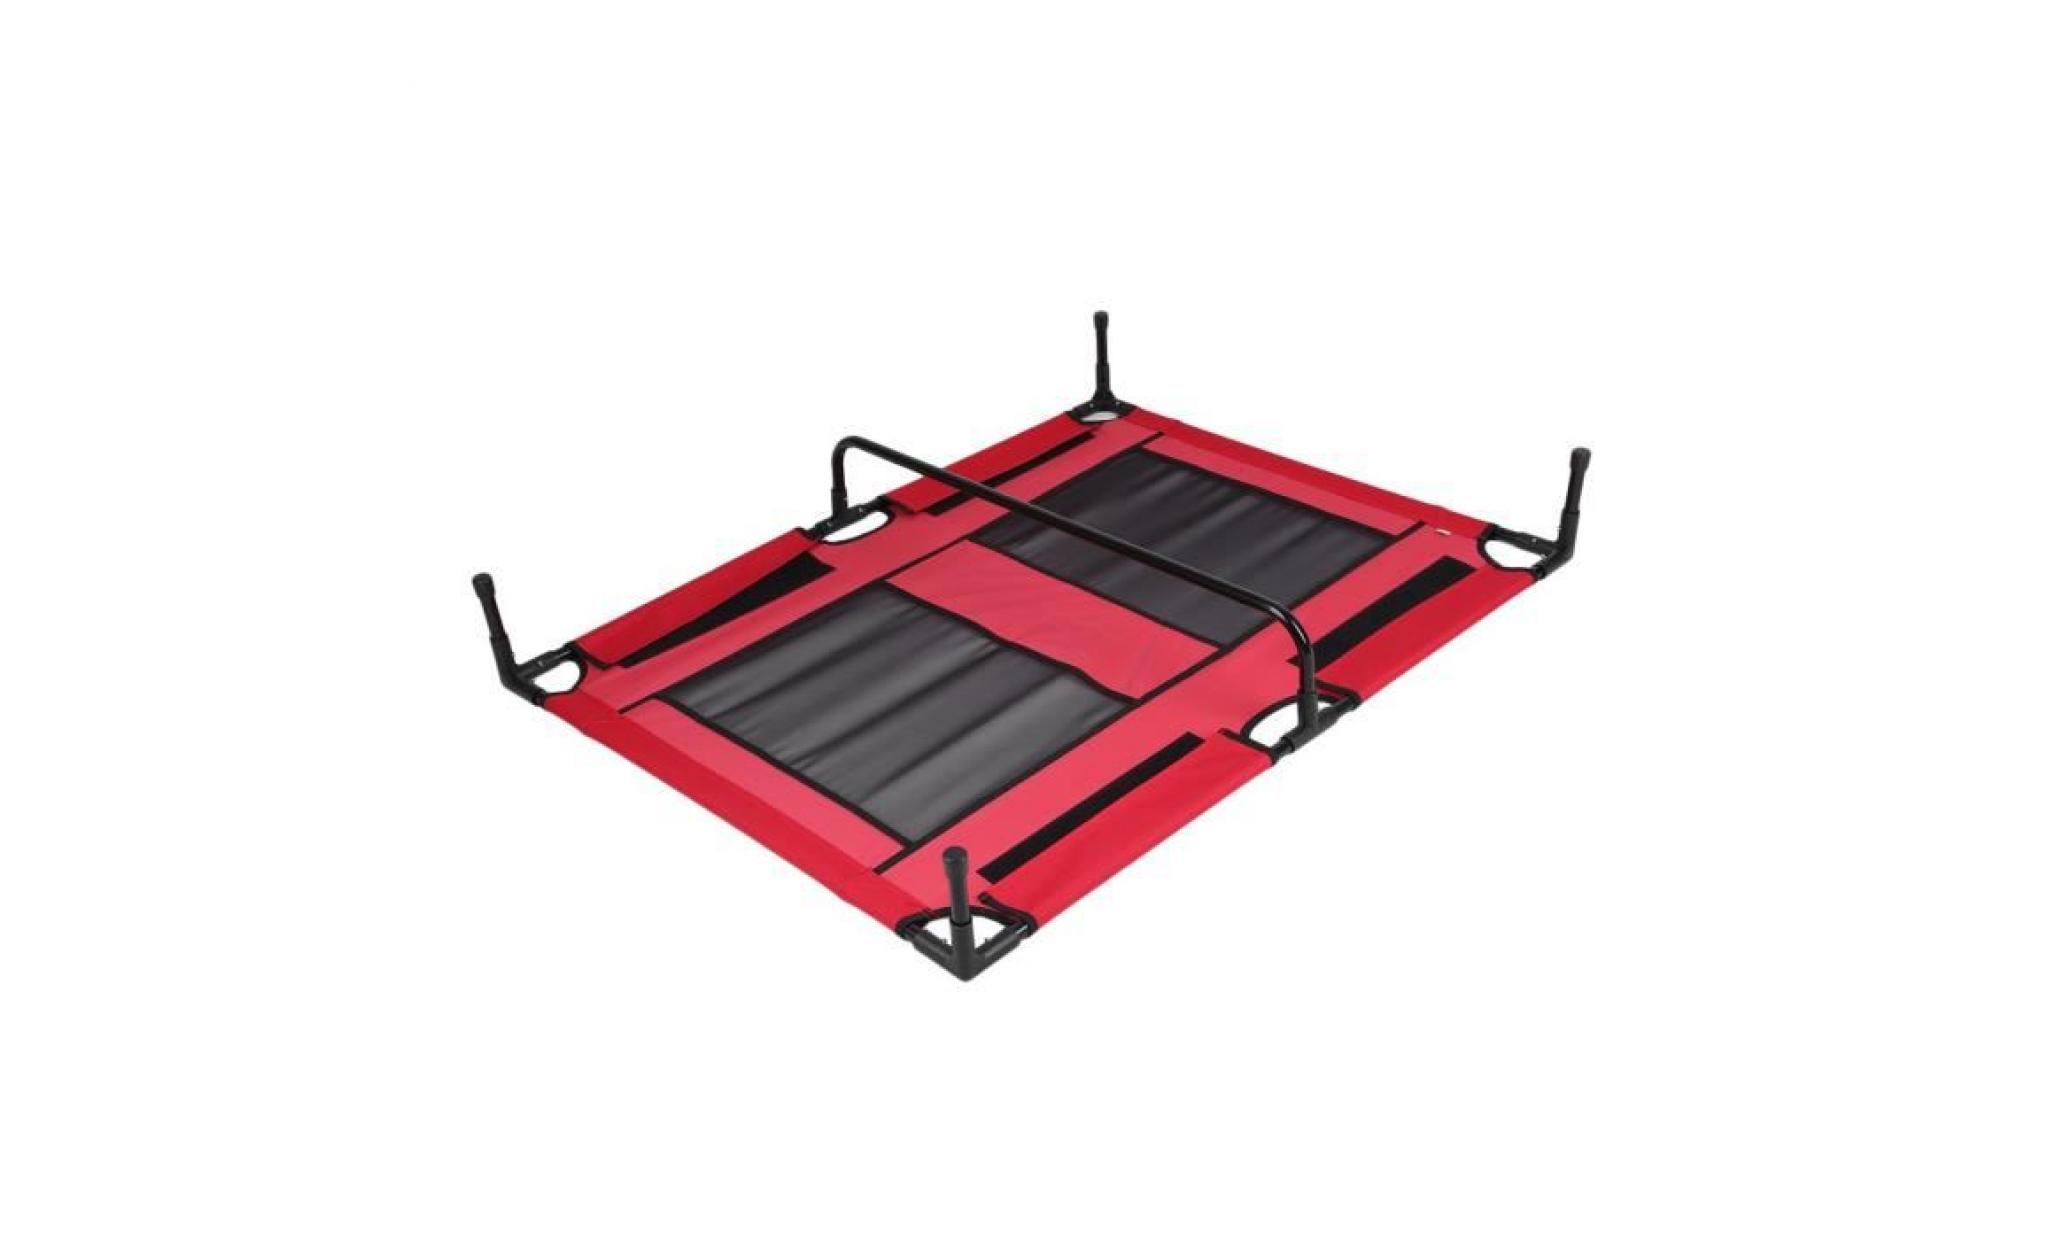 lit pliant pour chien chat lit assemblé respirant en acier tube cadre lit portable sauteur trampoline rouge pas cher